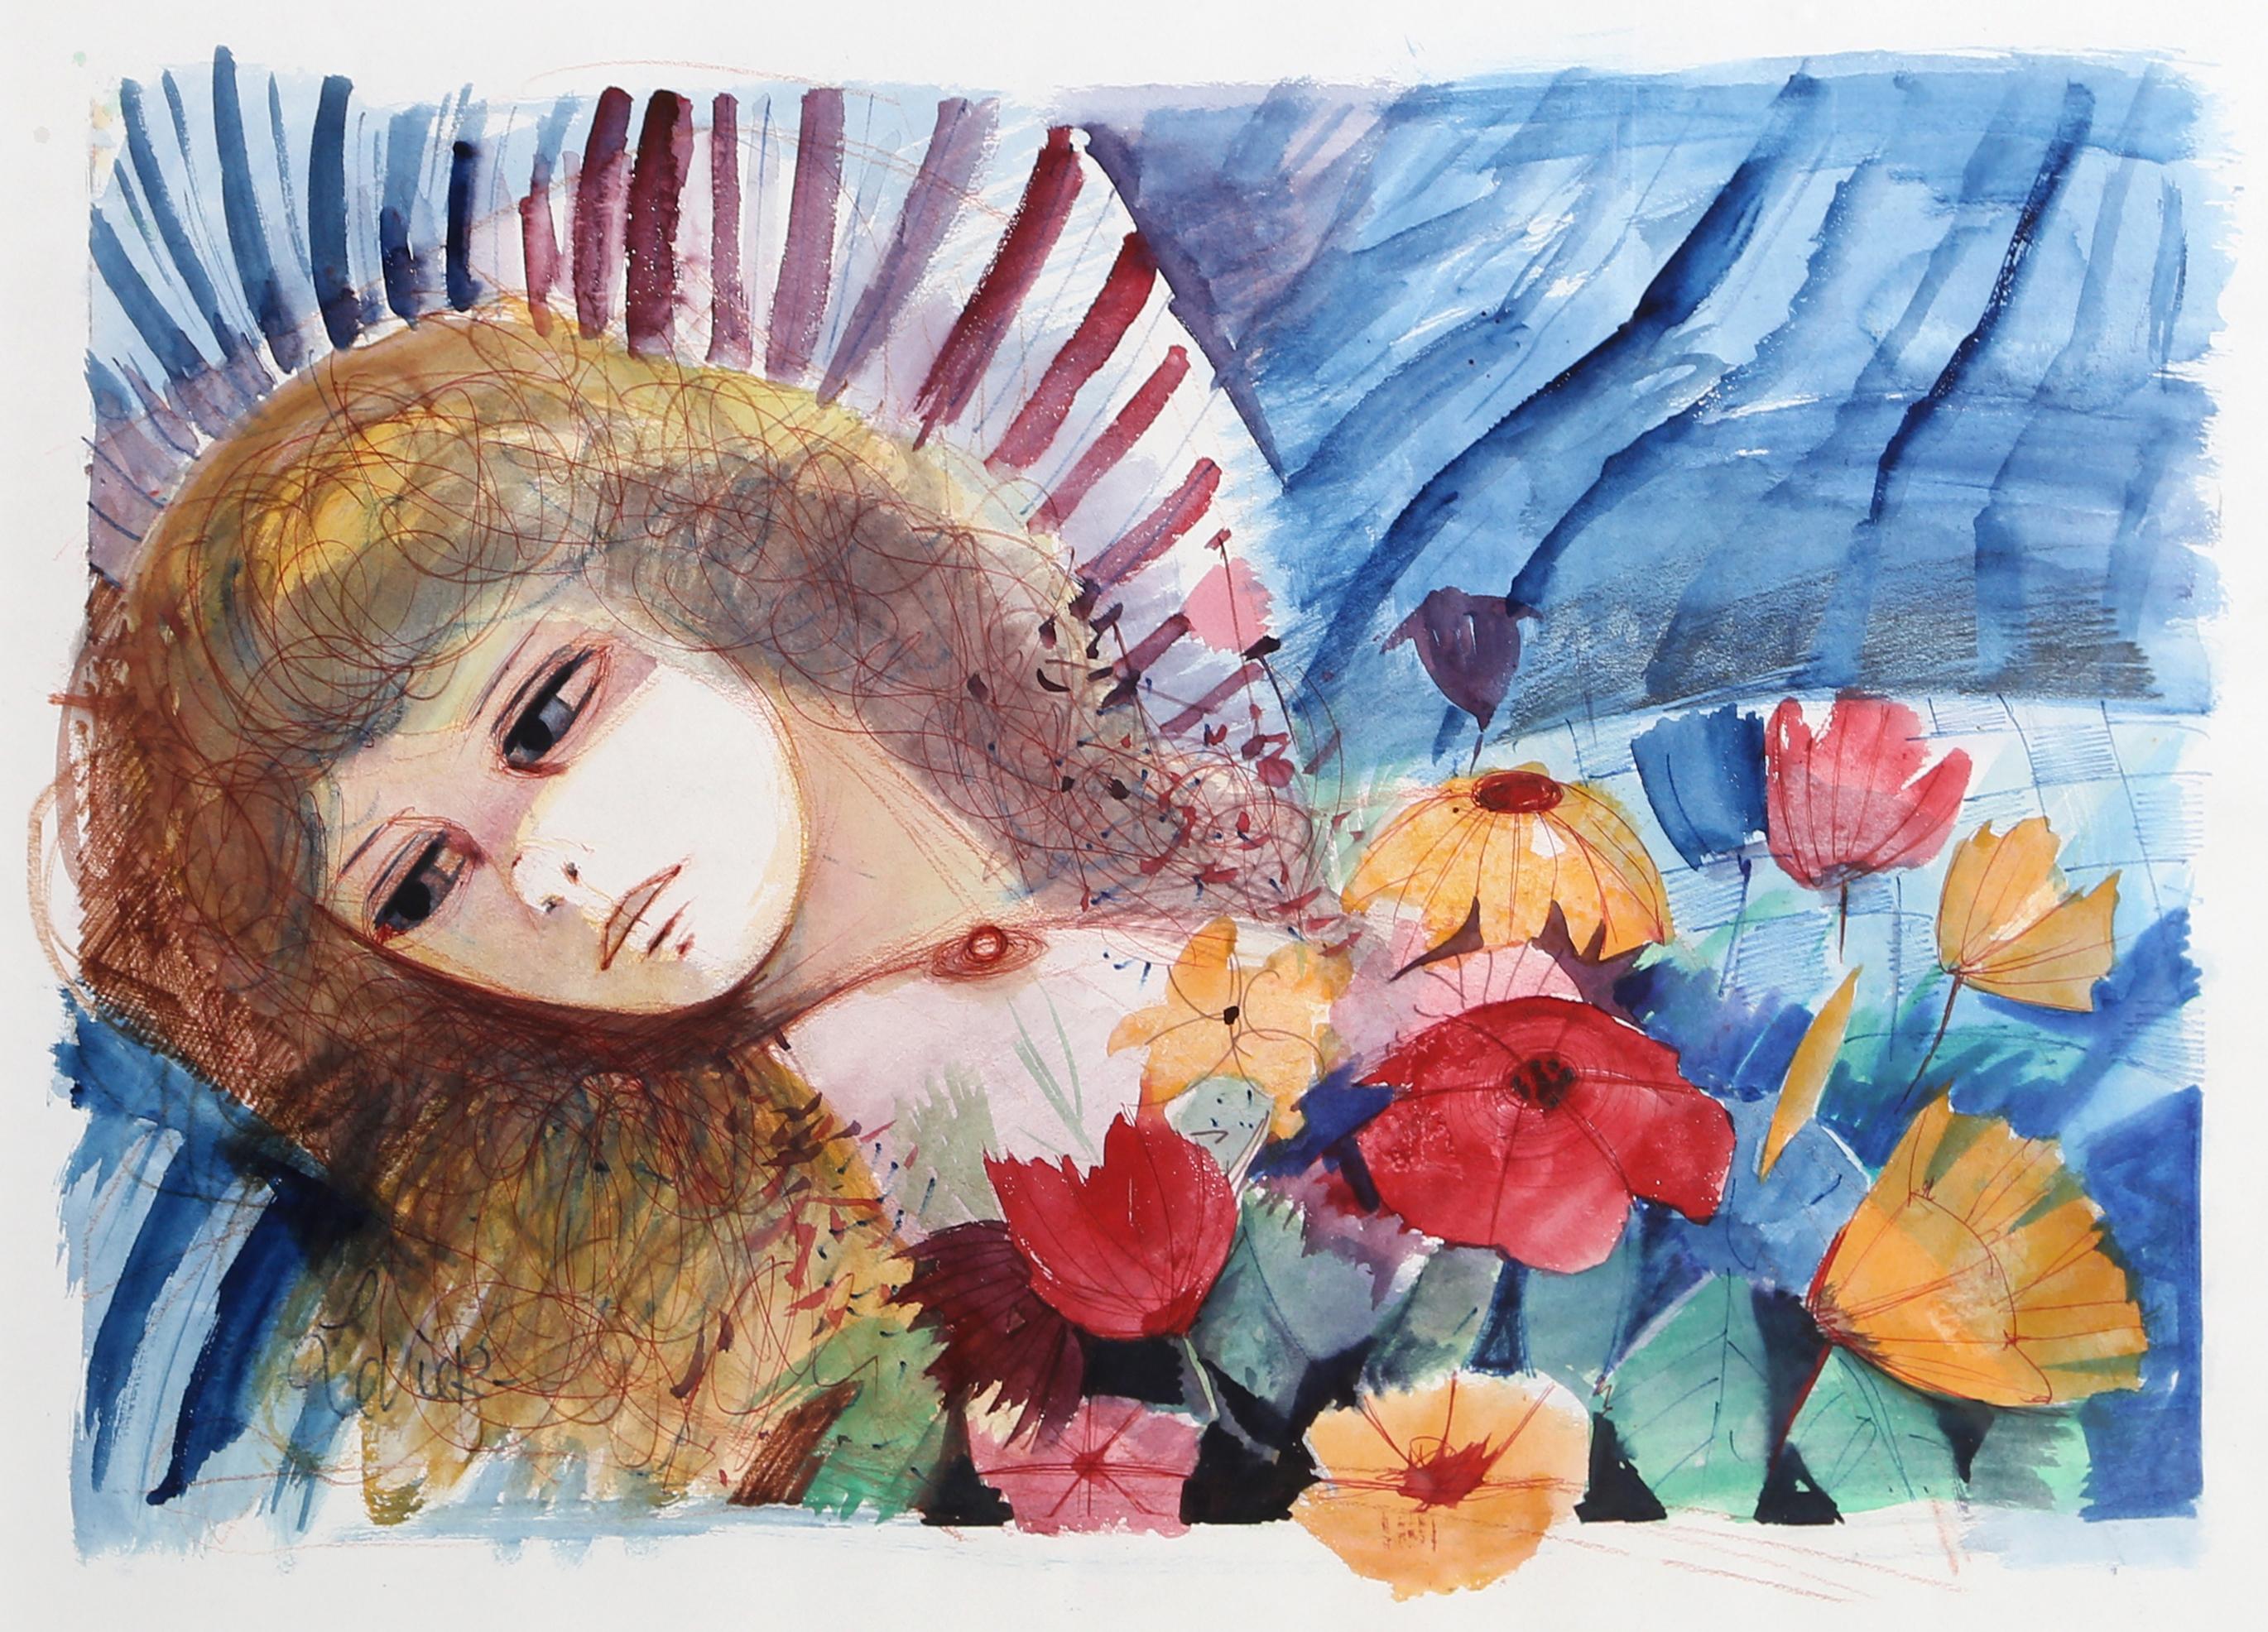 Künstler: Charles Levier, Franzose (1920 - 2003)
Titel: Liegende Frau und Blumen
Jahr: um 1970
Medium: Aquarell auf Papier, signiert
Bildgröße: 14 x 21 Zoll
Rahmengröße: 25,5 x 31 Zoll